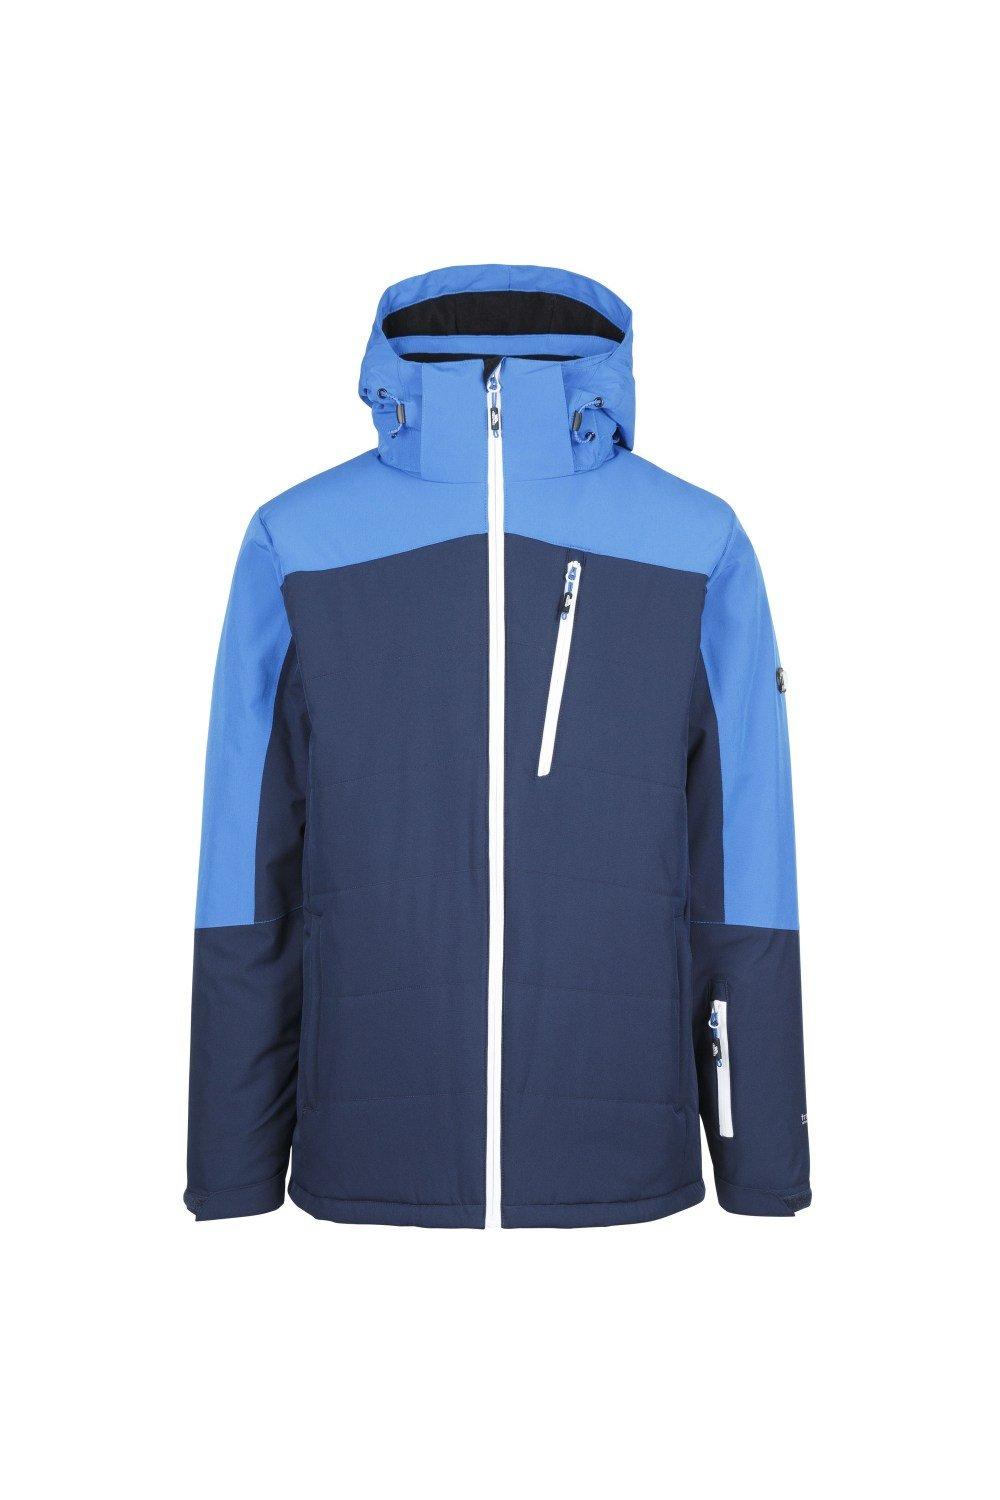 Лыжная куртка Bowie Trespass, темно-синий мужская лыжная куртка bowie темно синяя trespass цвет azul